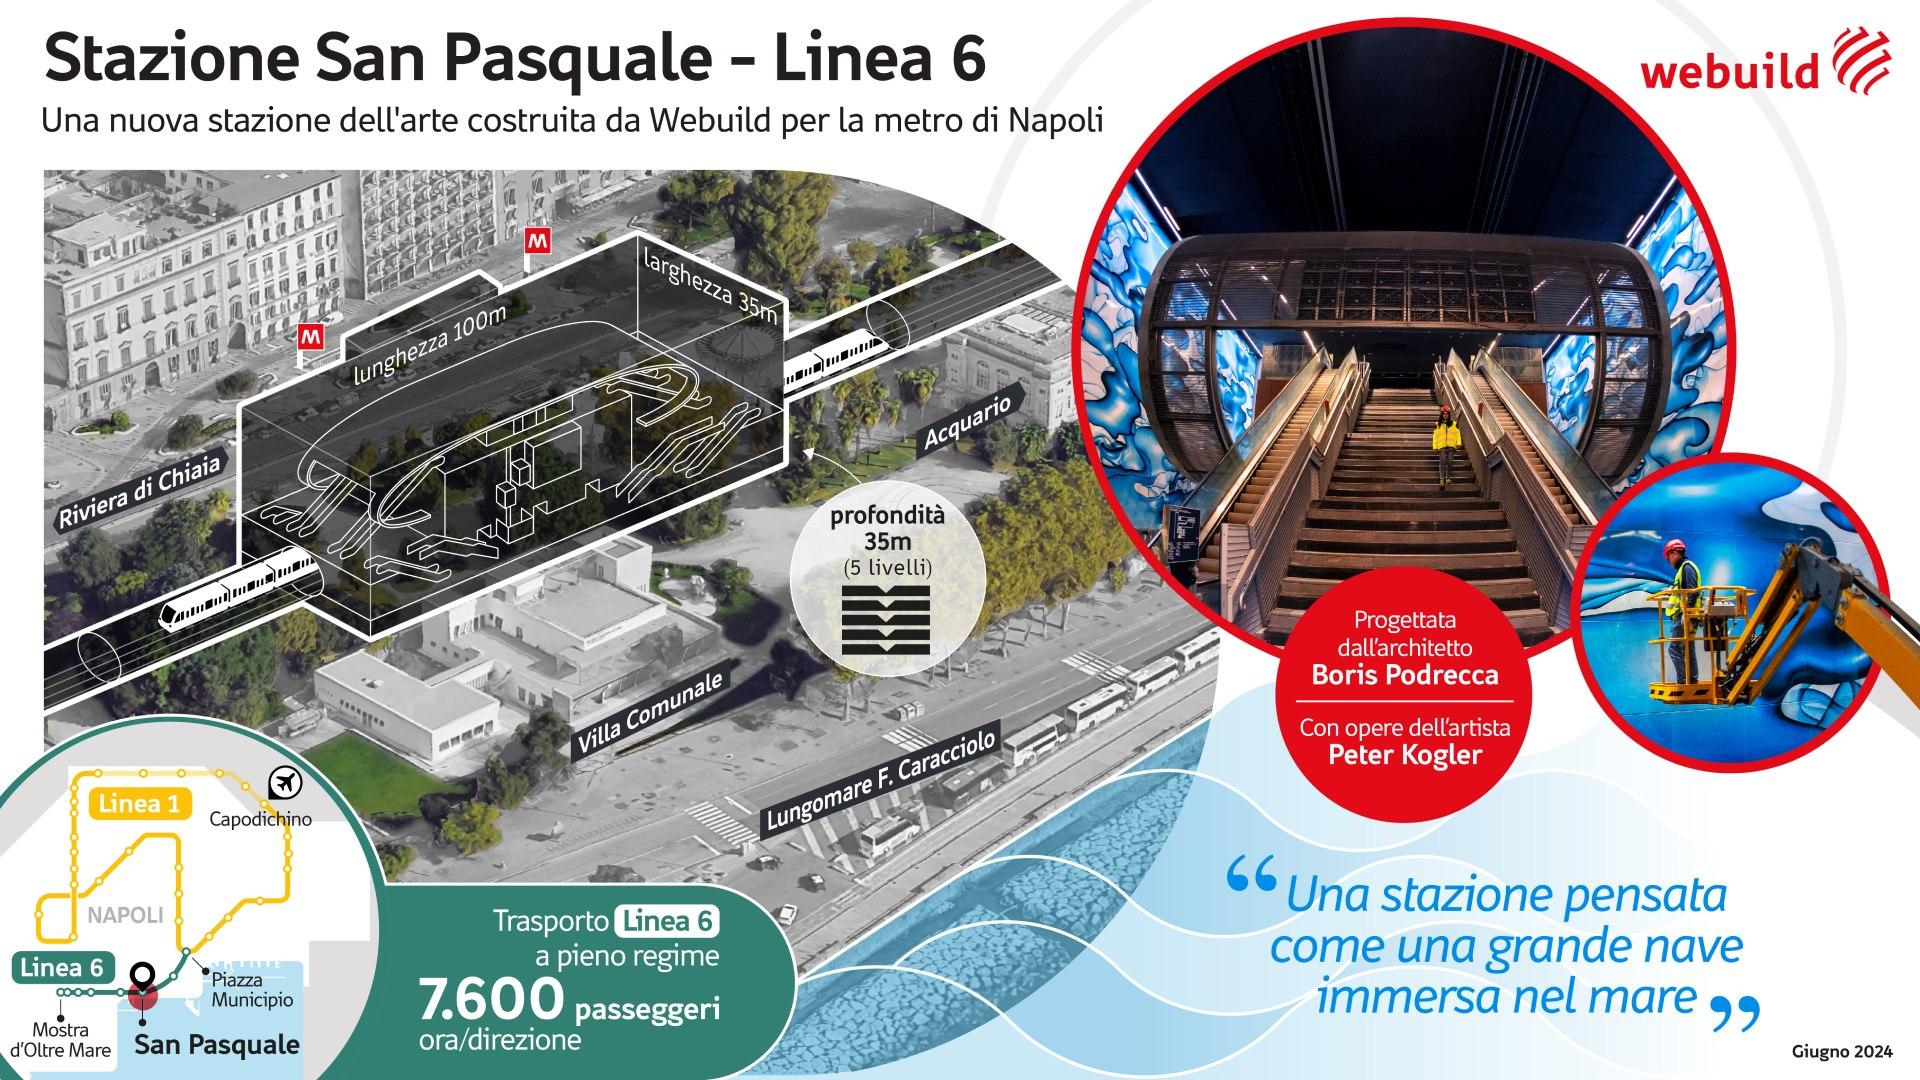 Stazione San Pasquale, Metropolitana di Napoli - Linea 6 | Webuild